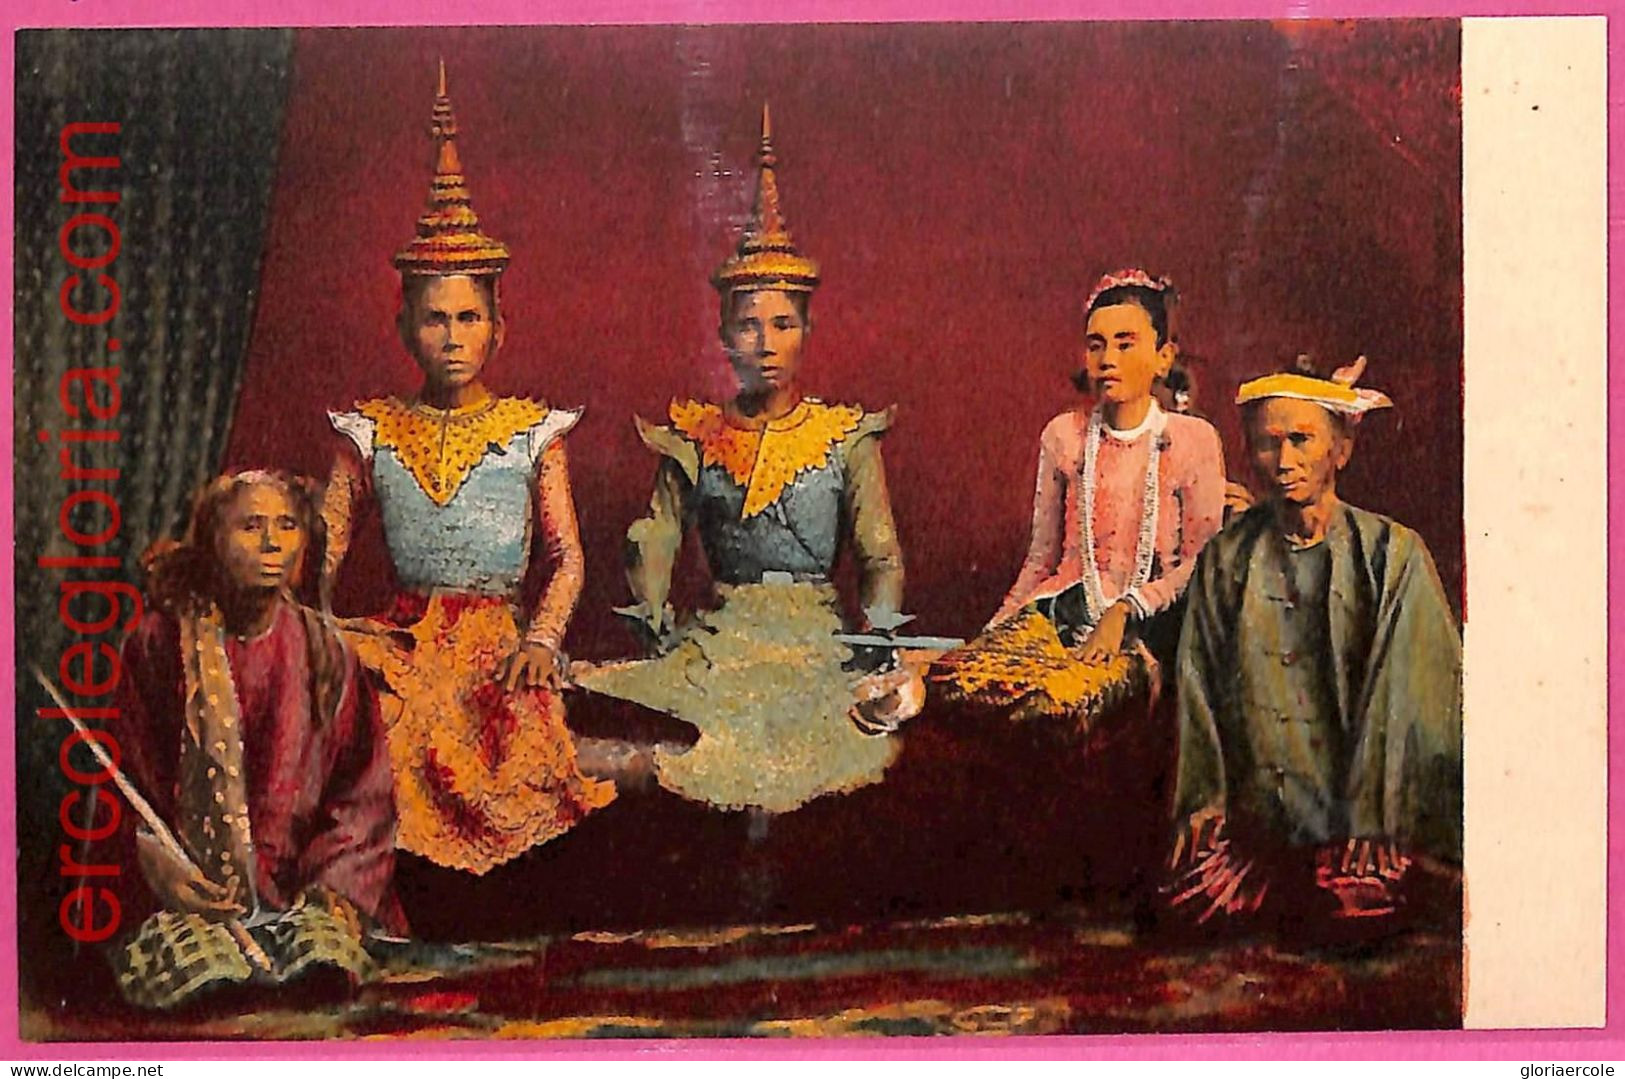 Af9307 - MYANMAR  Burma   -  VINTAGE POSTCARD - Costumes - Myanmar (Burma)